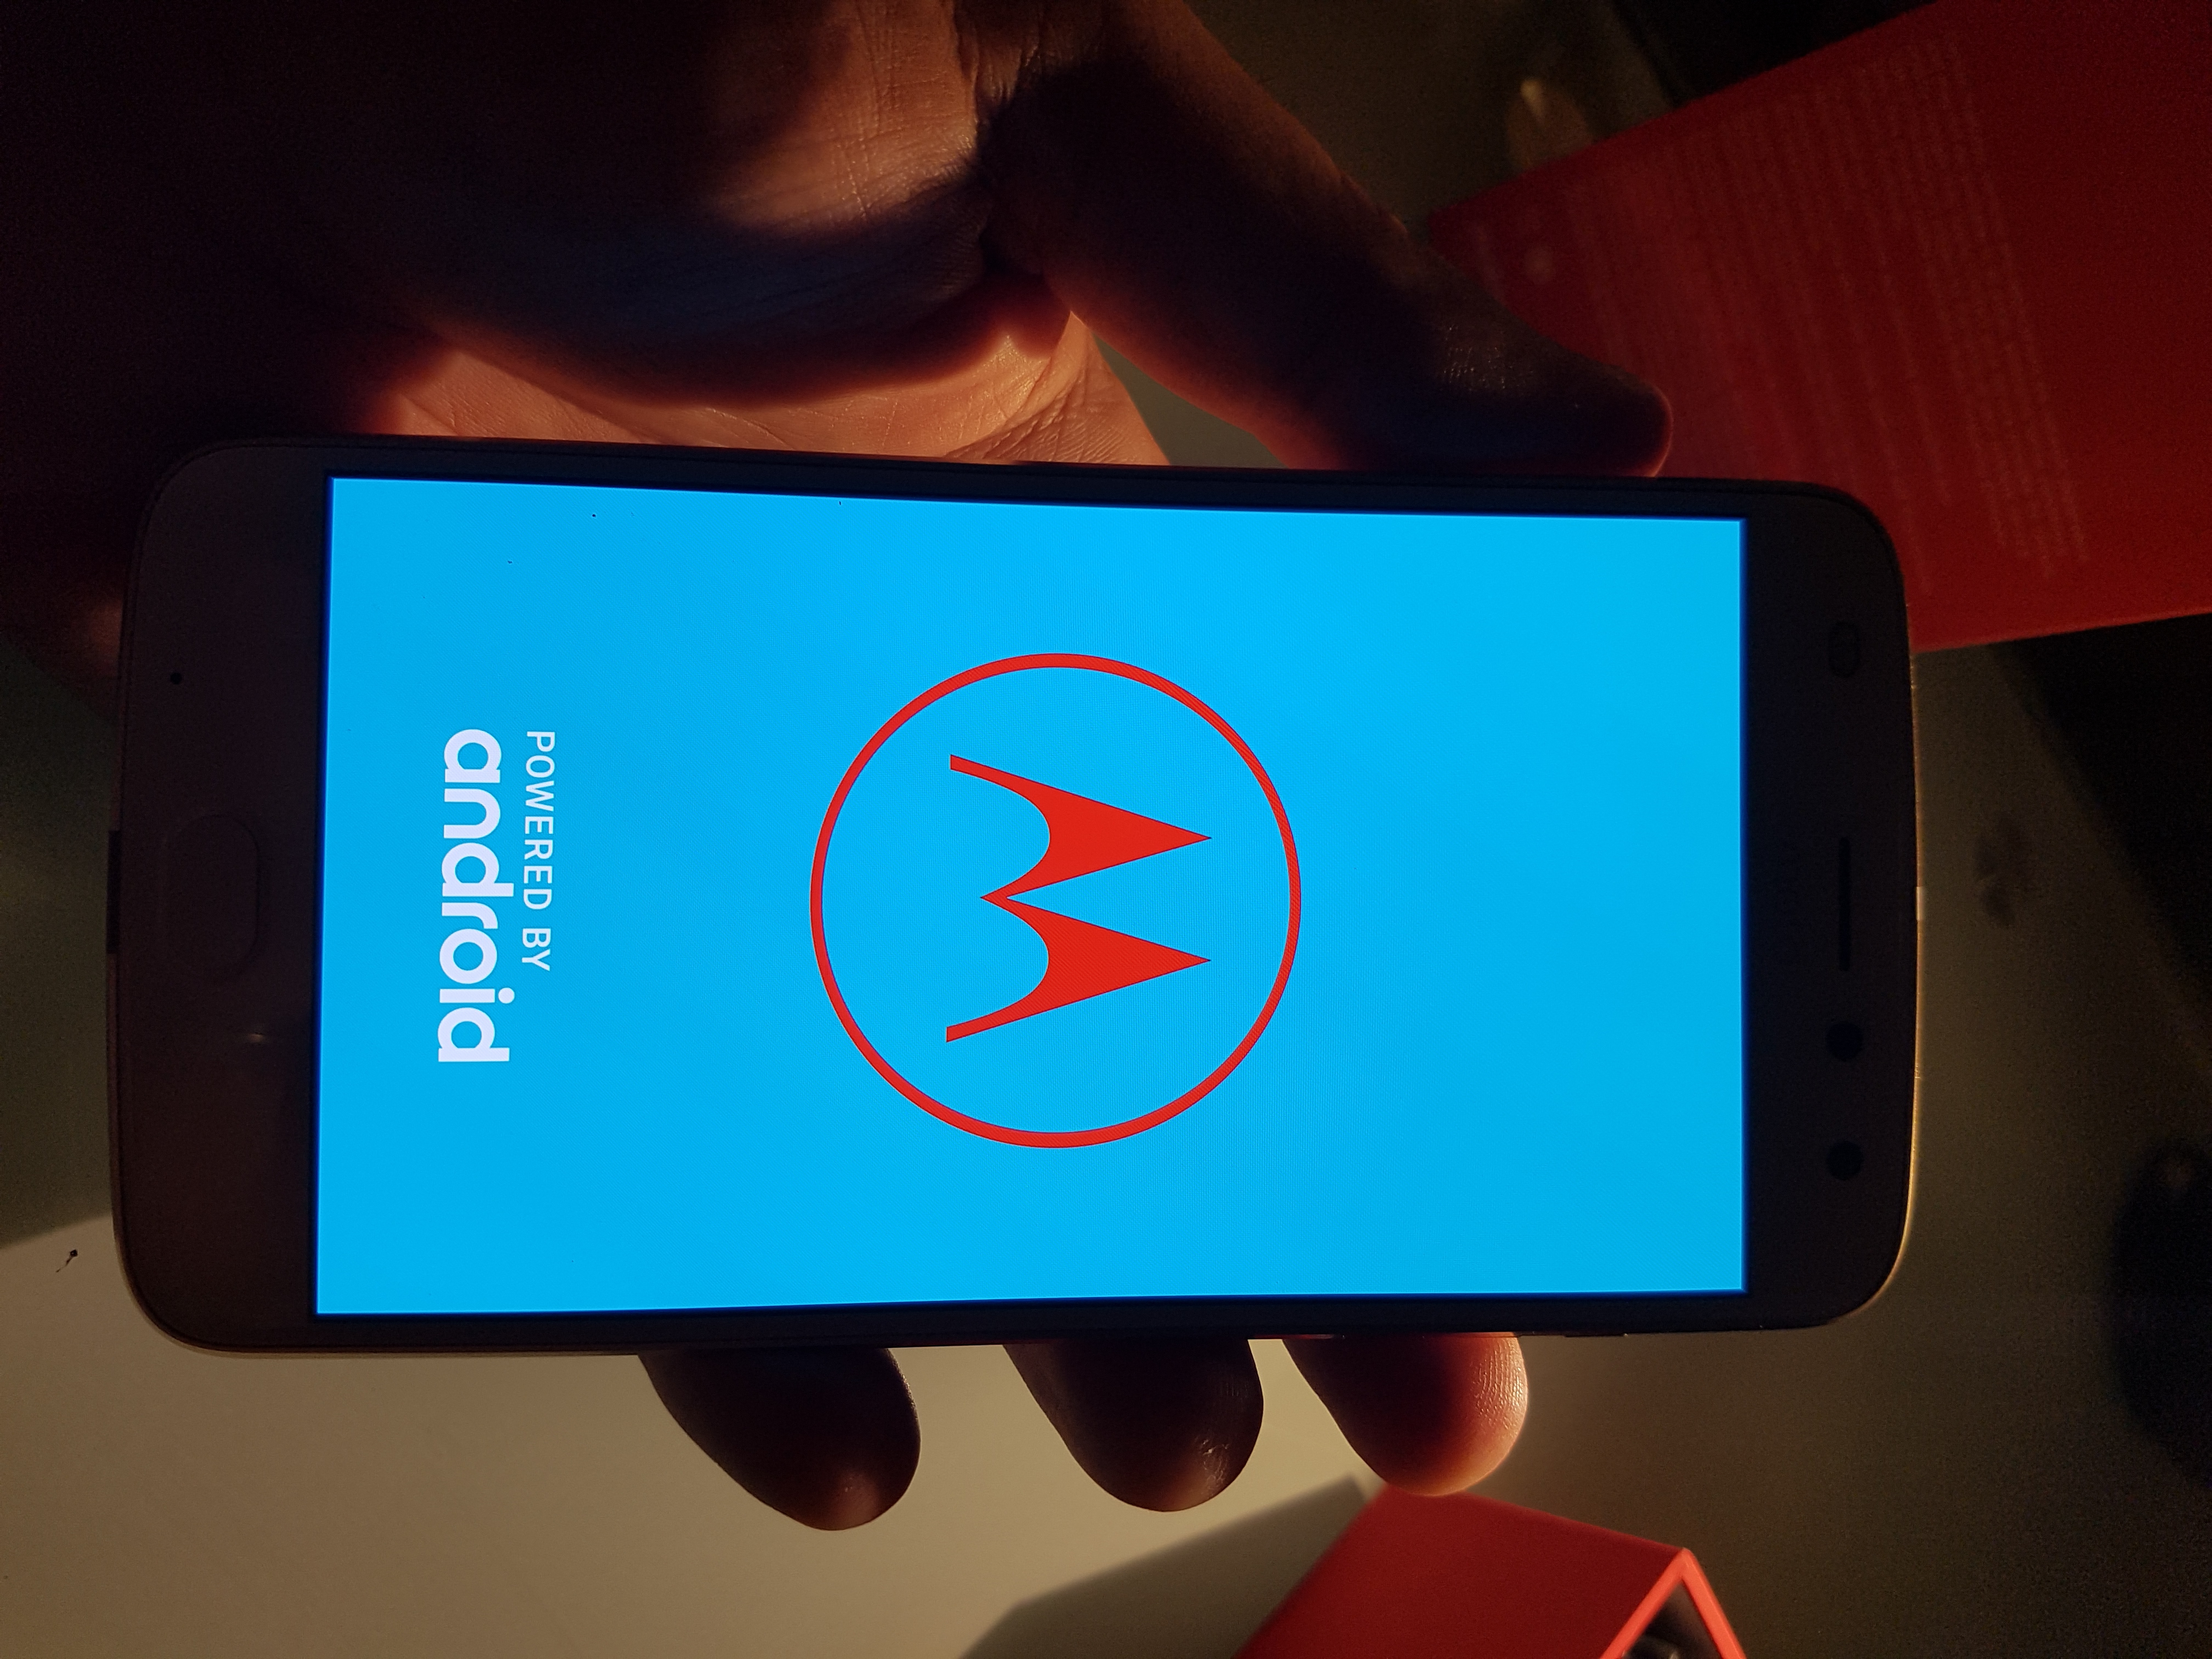 Téléphone modulaire et mods: 3 mois avec le Motorola Moto Z2 Play (1/2)